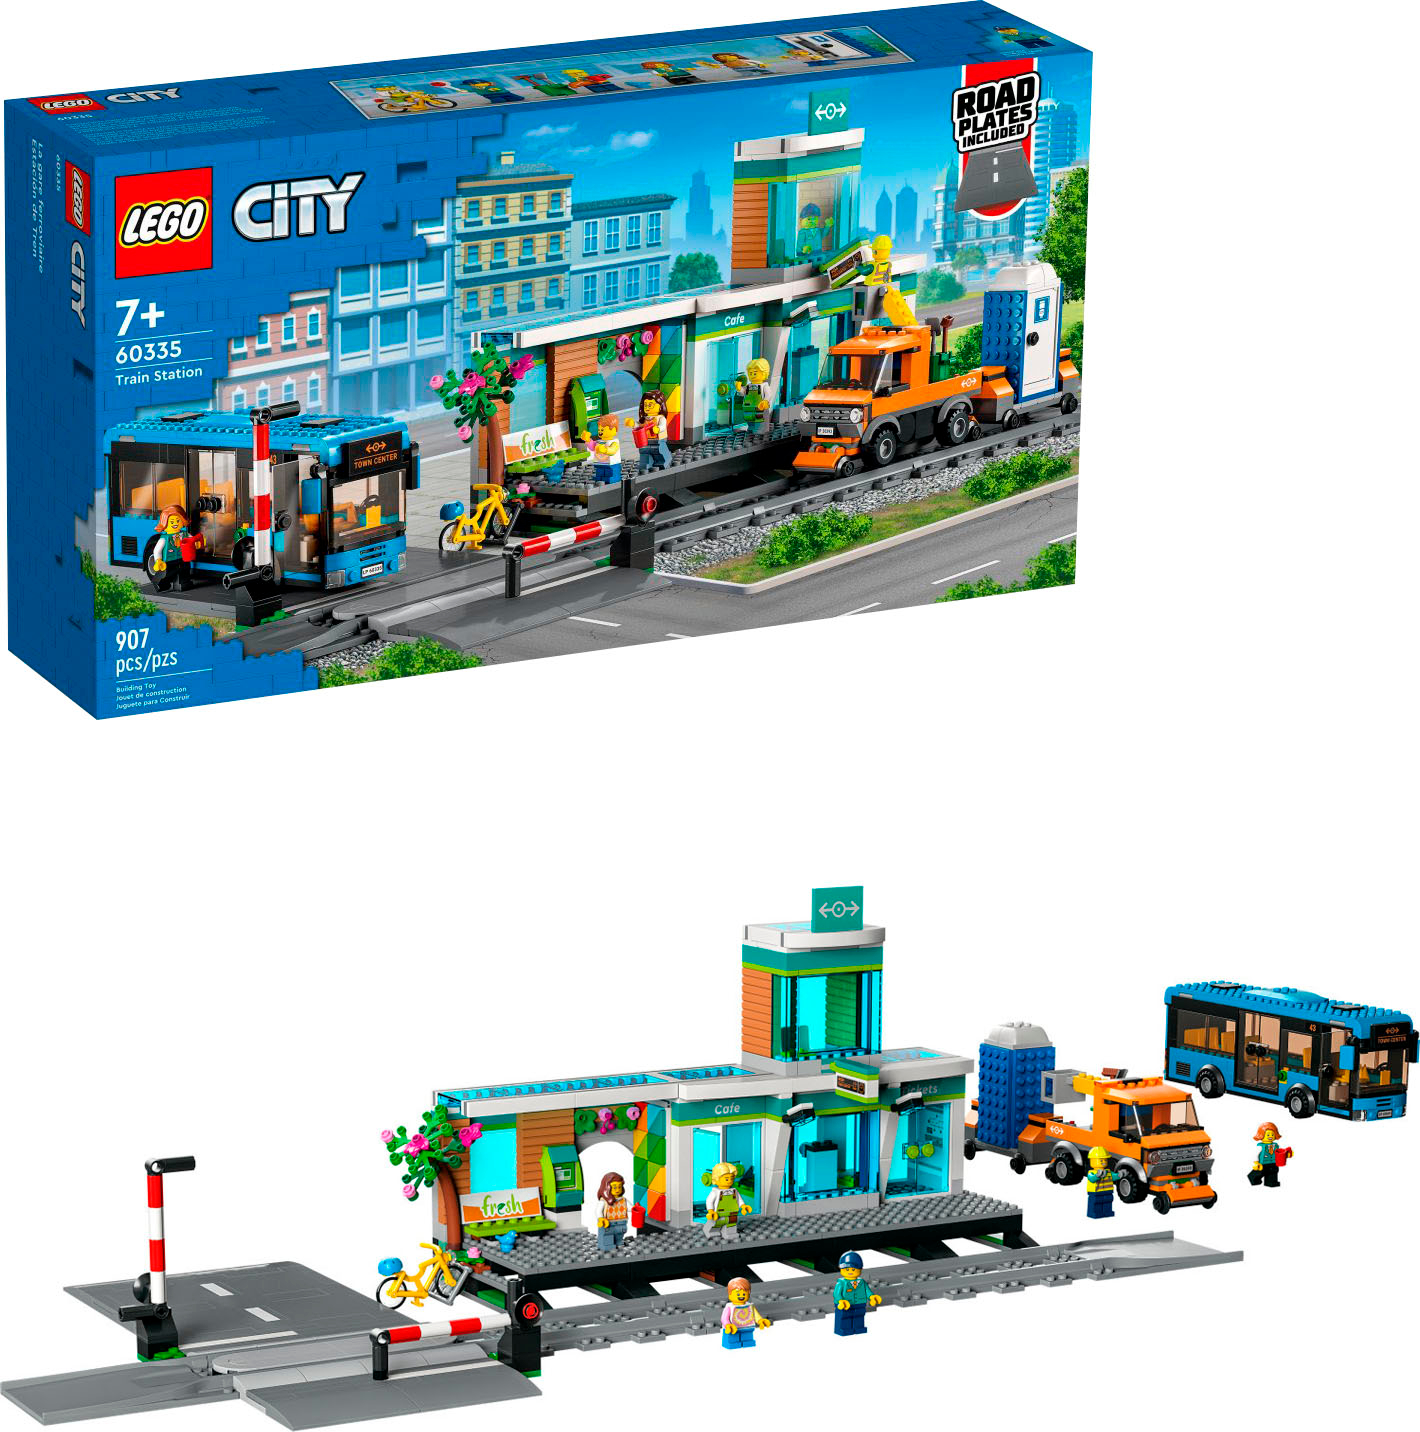 kollektion omfatte Wedge LEGO City Train Station 60335 6385807 - Best Buy